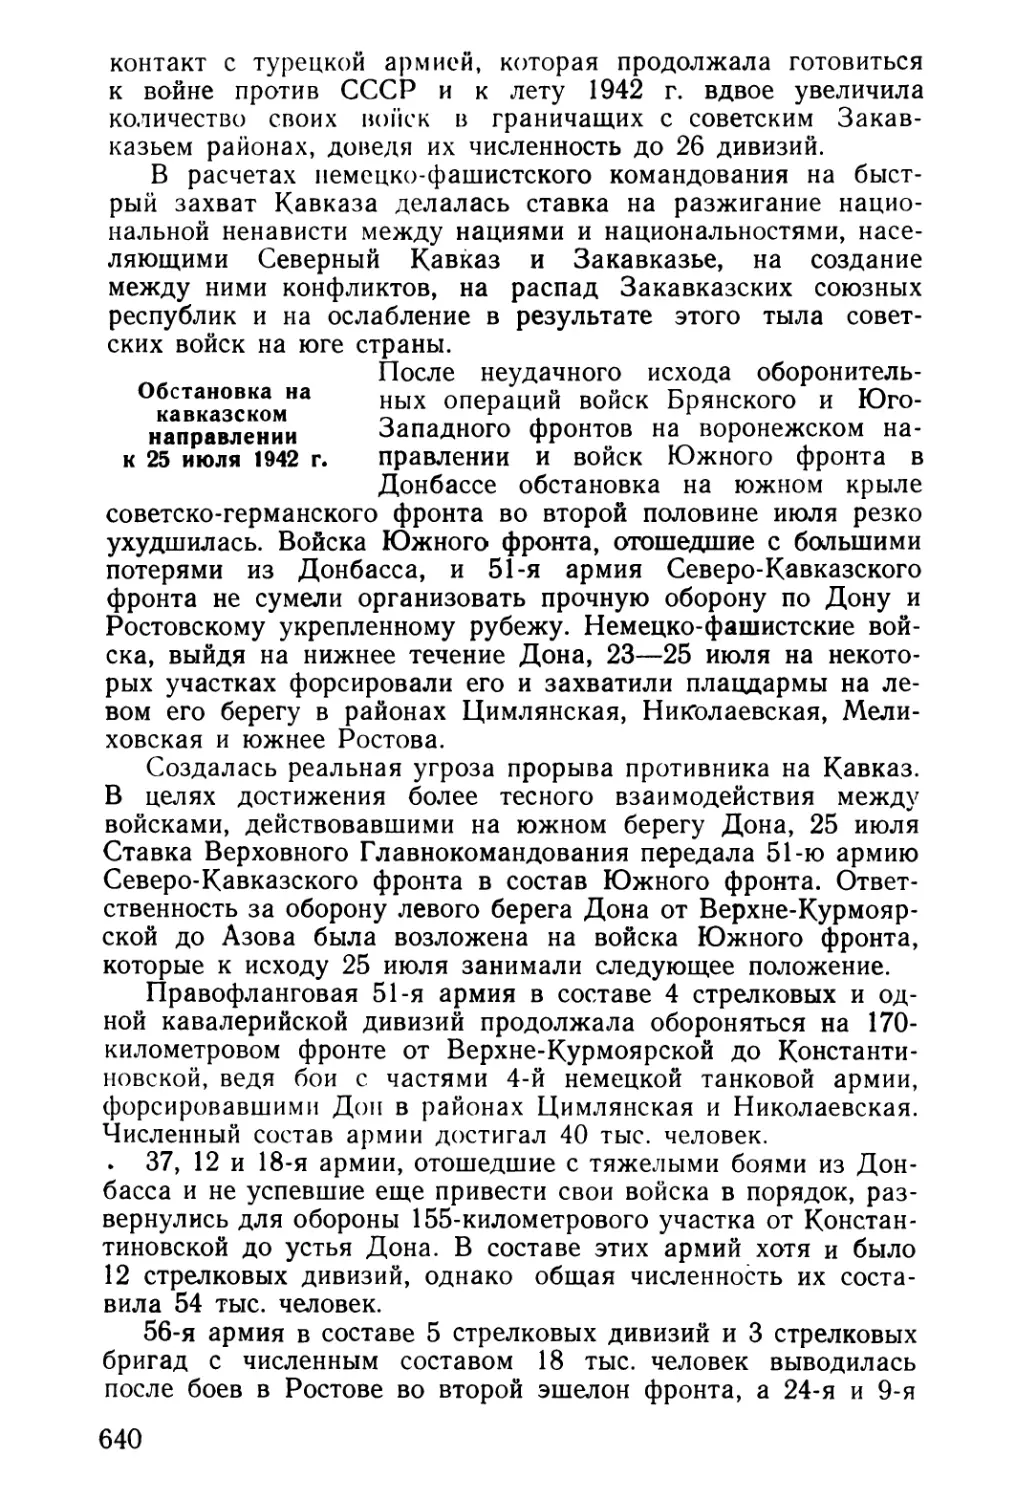 Обстановка на кавказском направлении к 25 июля 1942 г